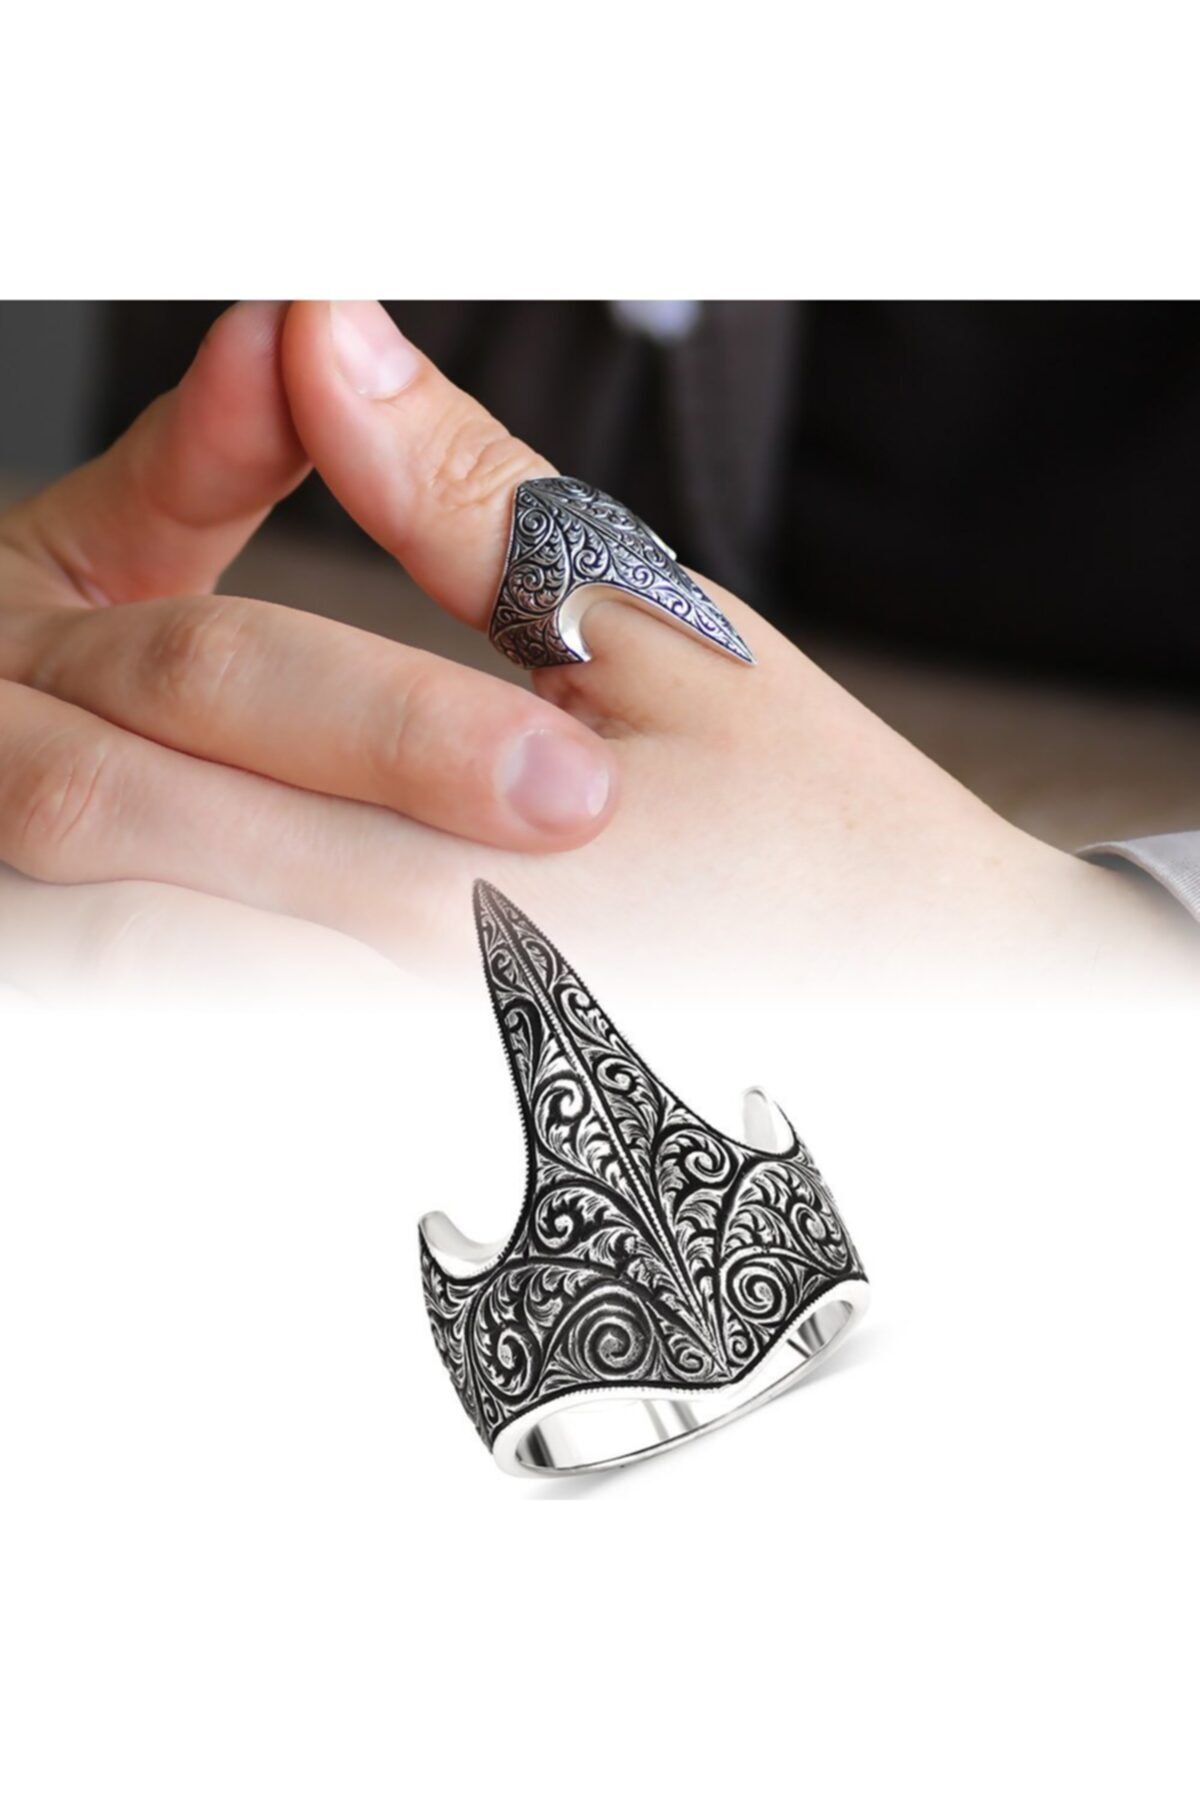 Tesbihane Özel Tasarım Eskitme Renk 925 Ayar Gümüş Okçu (zihgir) Yüzüğü